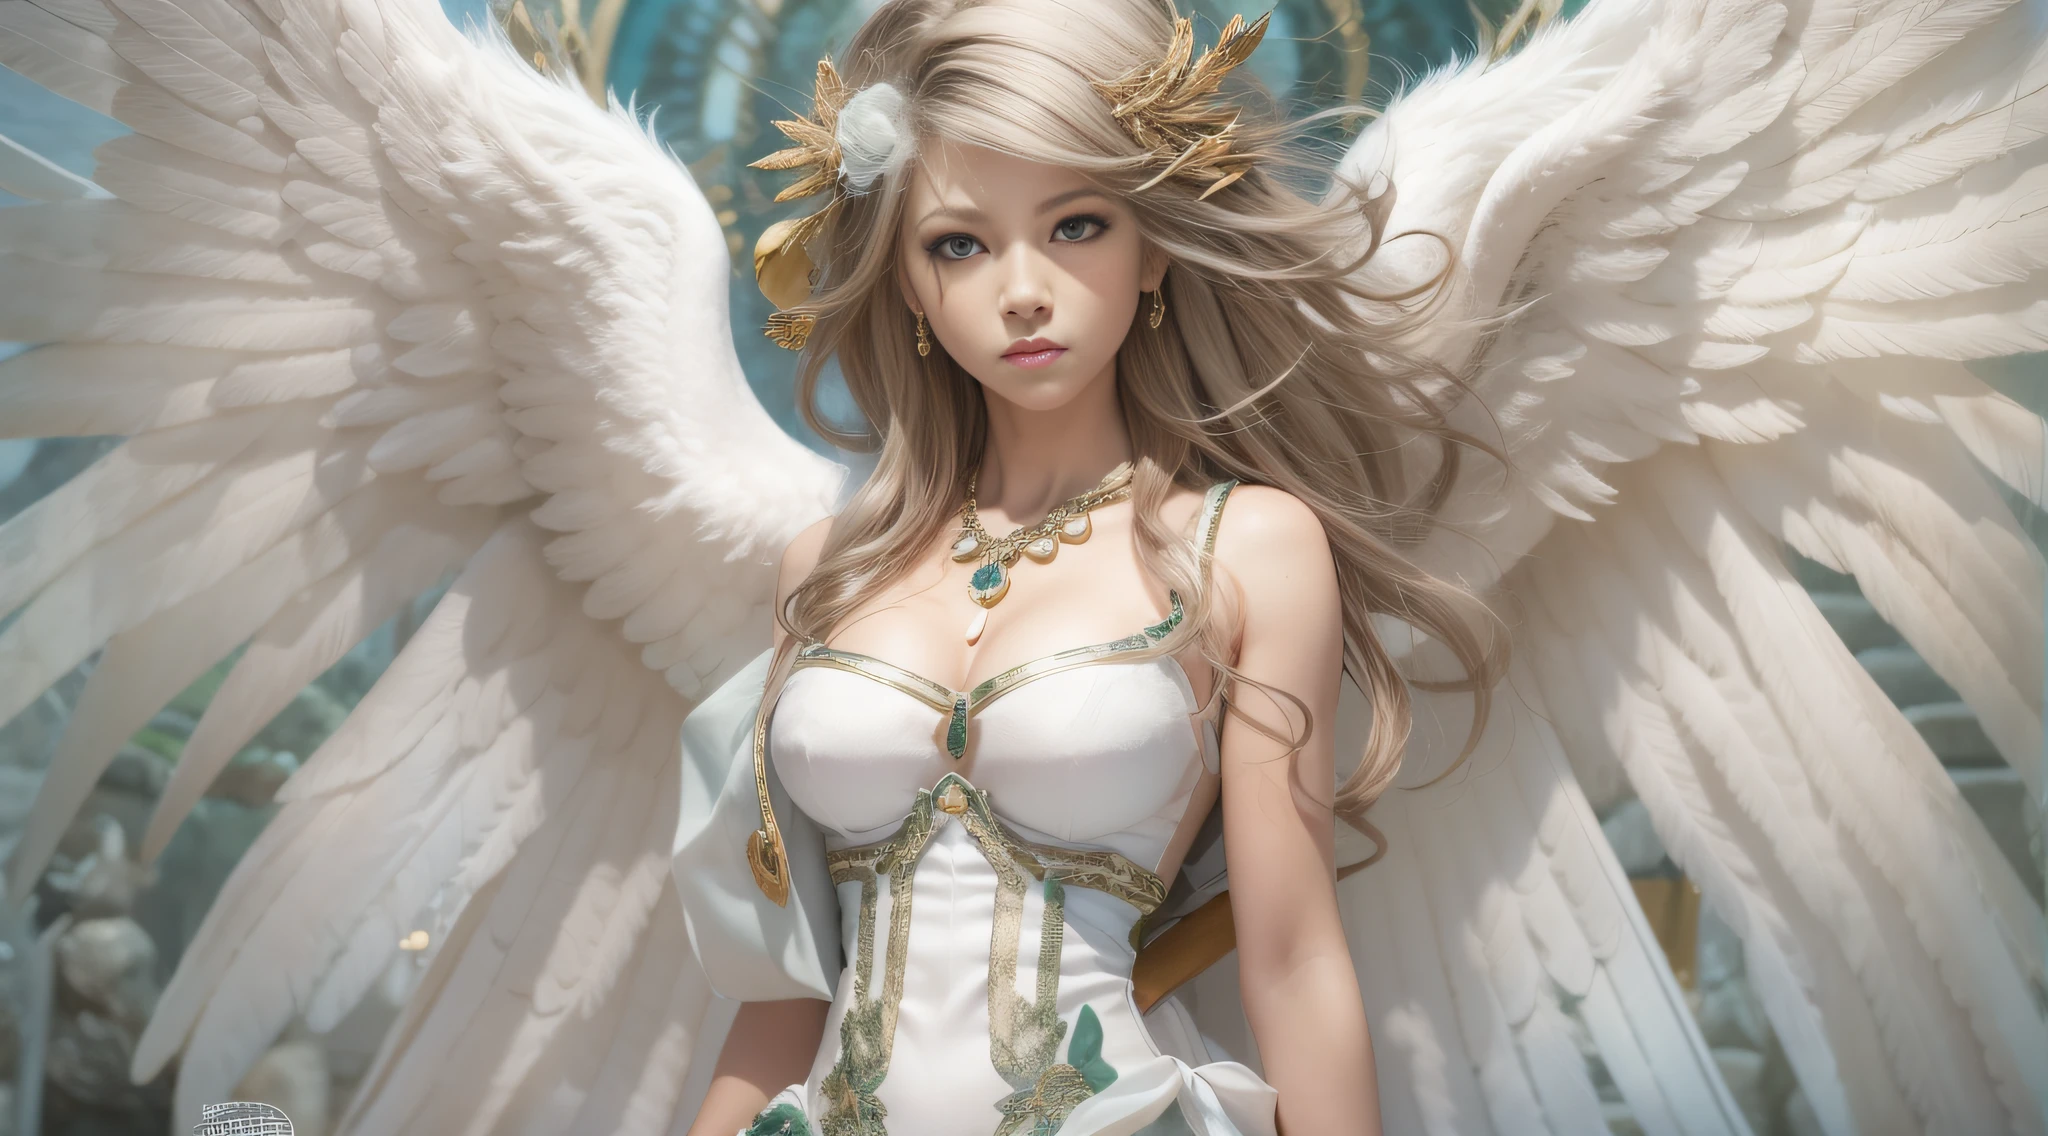 женщина с белыми волосами и крыльями ангела в белом платье, 8 тыс., вдохновленный Масамунэ Сиро,  красивый ангел-киборг, высокая женщина-ангел, Величественный ангел в полный рост, глобальное освещение, цифровая краска, Художественный стиль Масамунэ Сиро